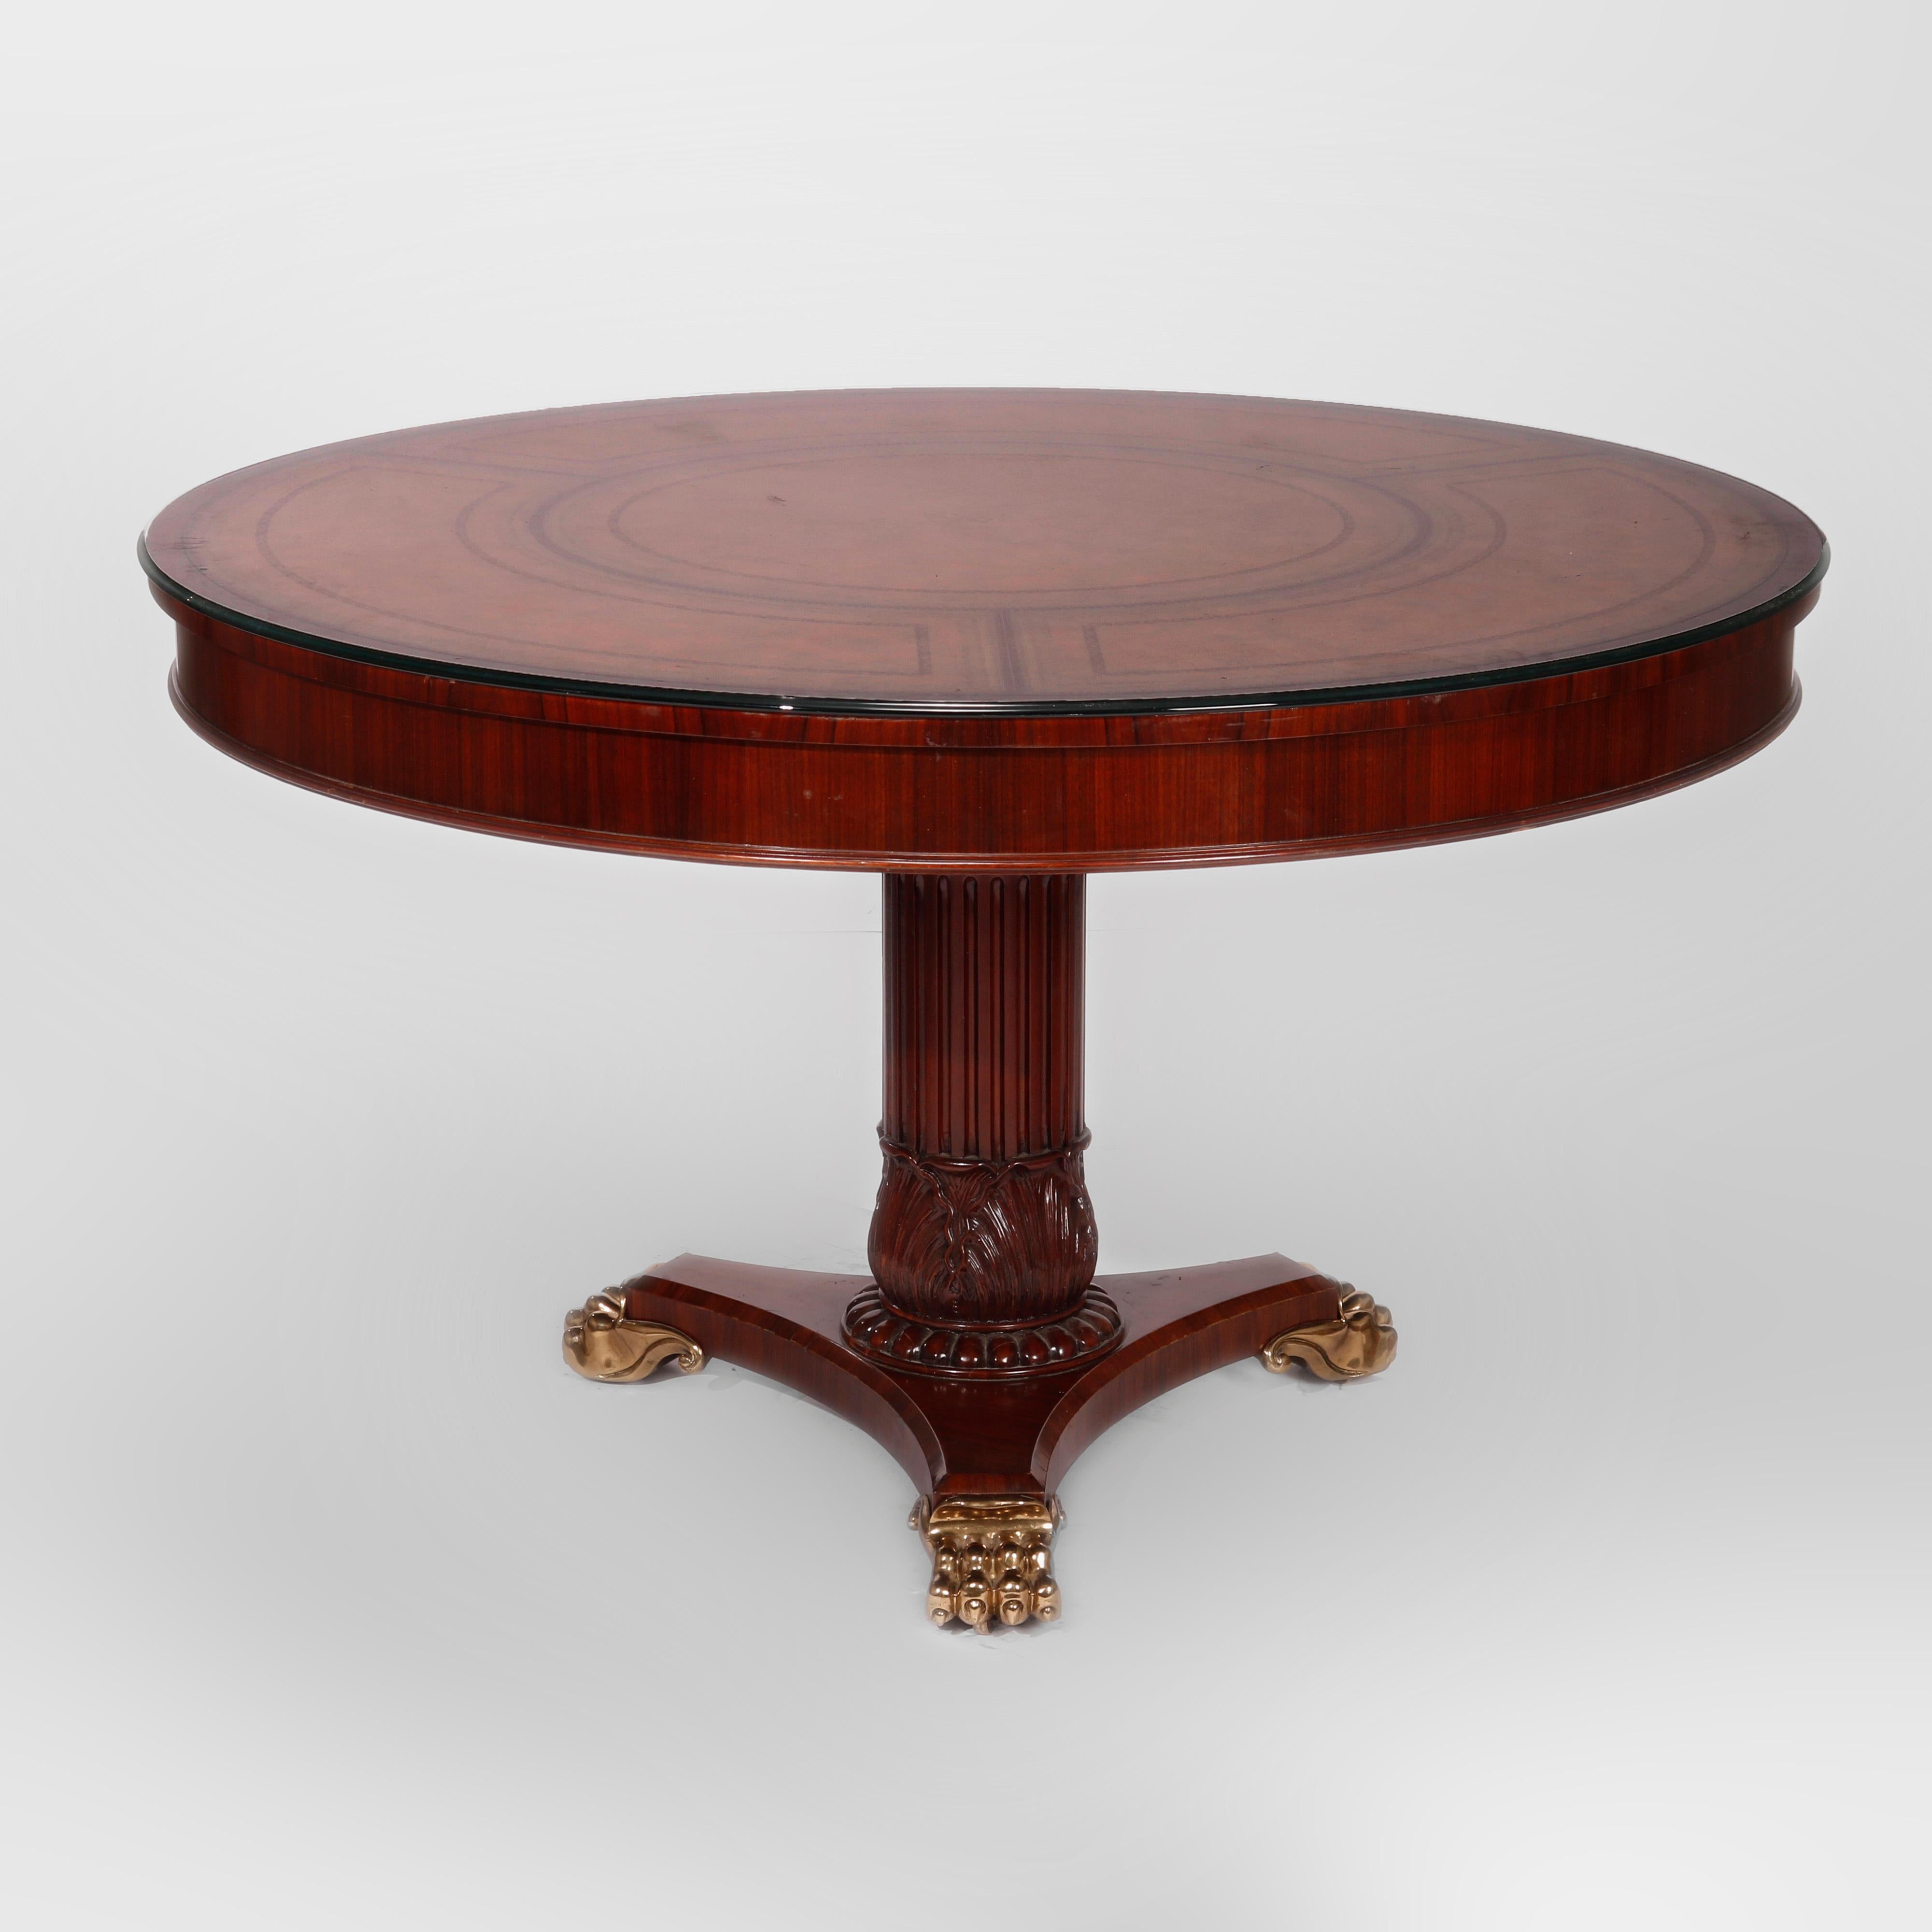 Une table centrale de style néoclassique par Maitland Smith offre une construction en bois de rose et en acajou de forme circulaire avec un plateau en cuir doré et repoussé sur un piédestal sculpté d'acanthes, le tout reposant sur des pieds en